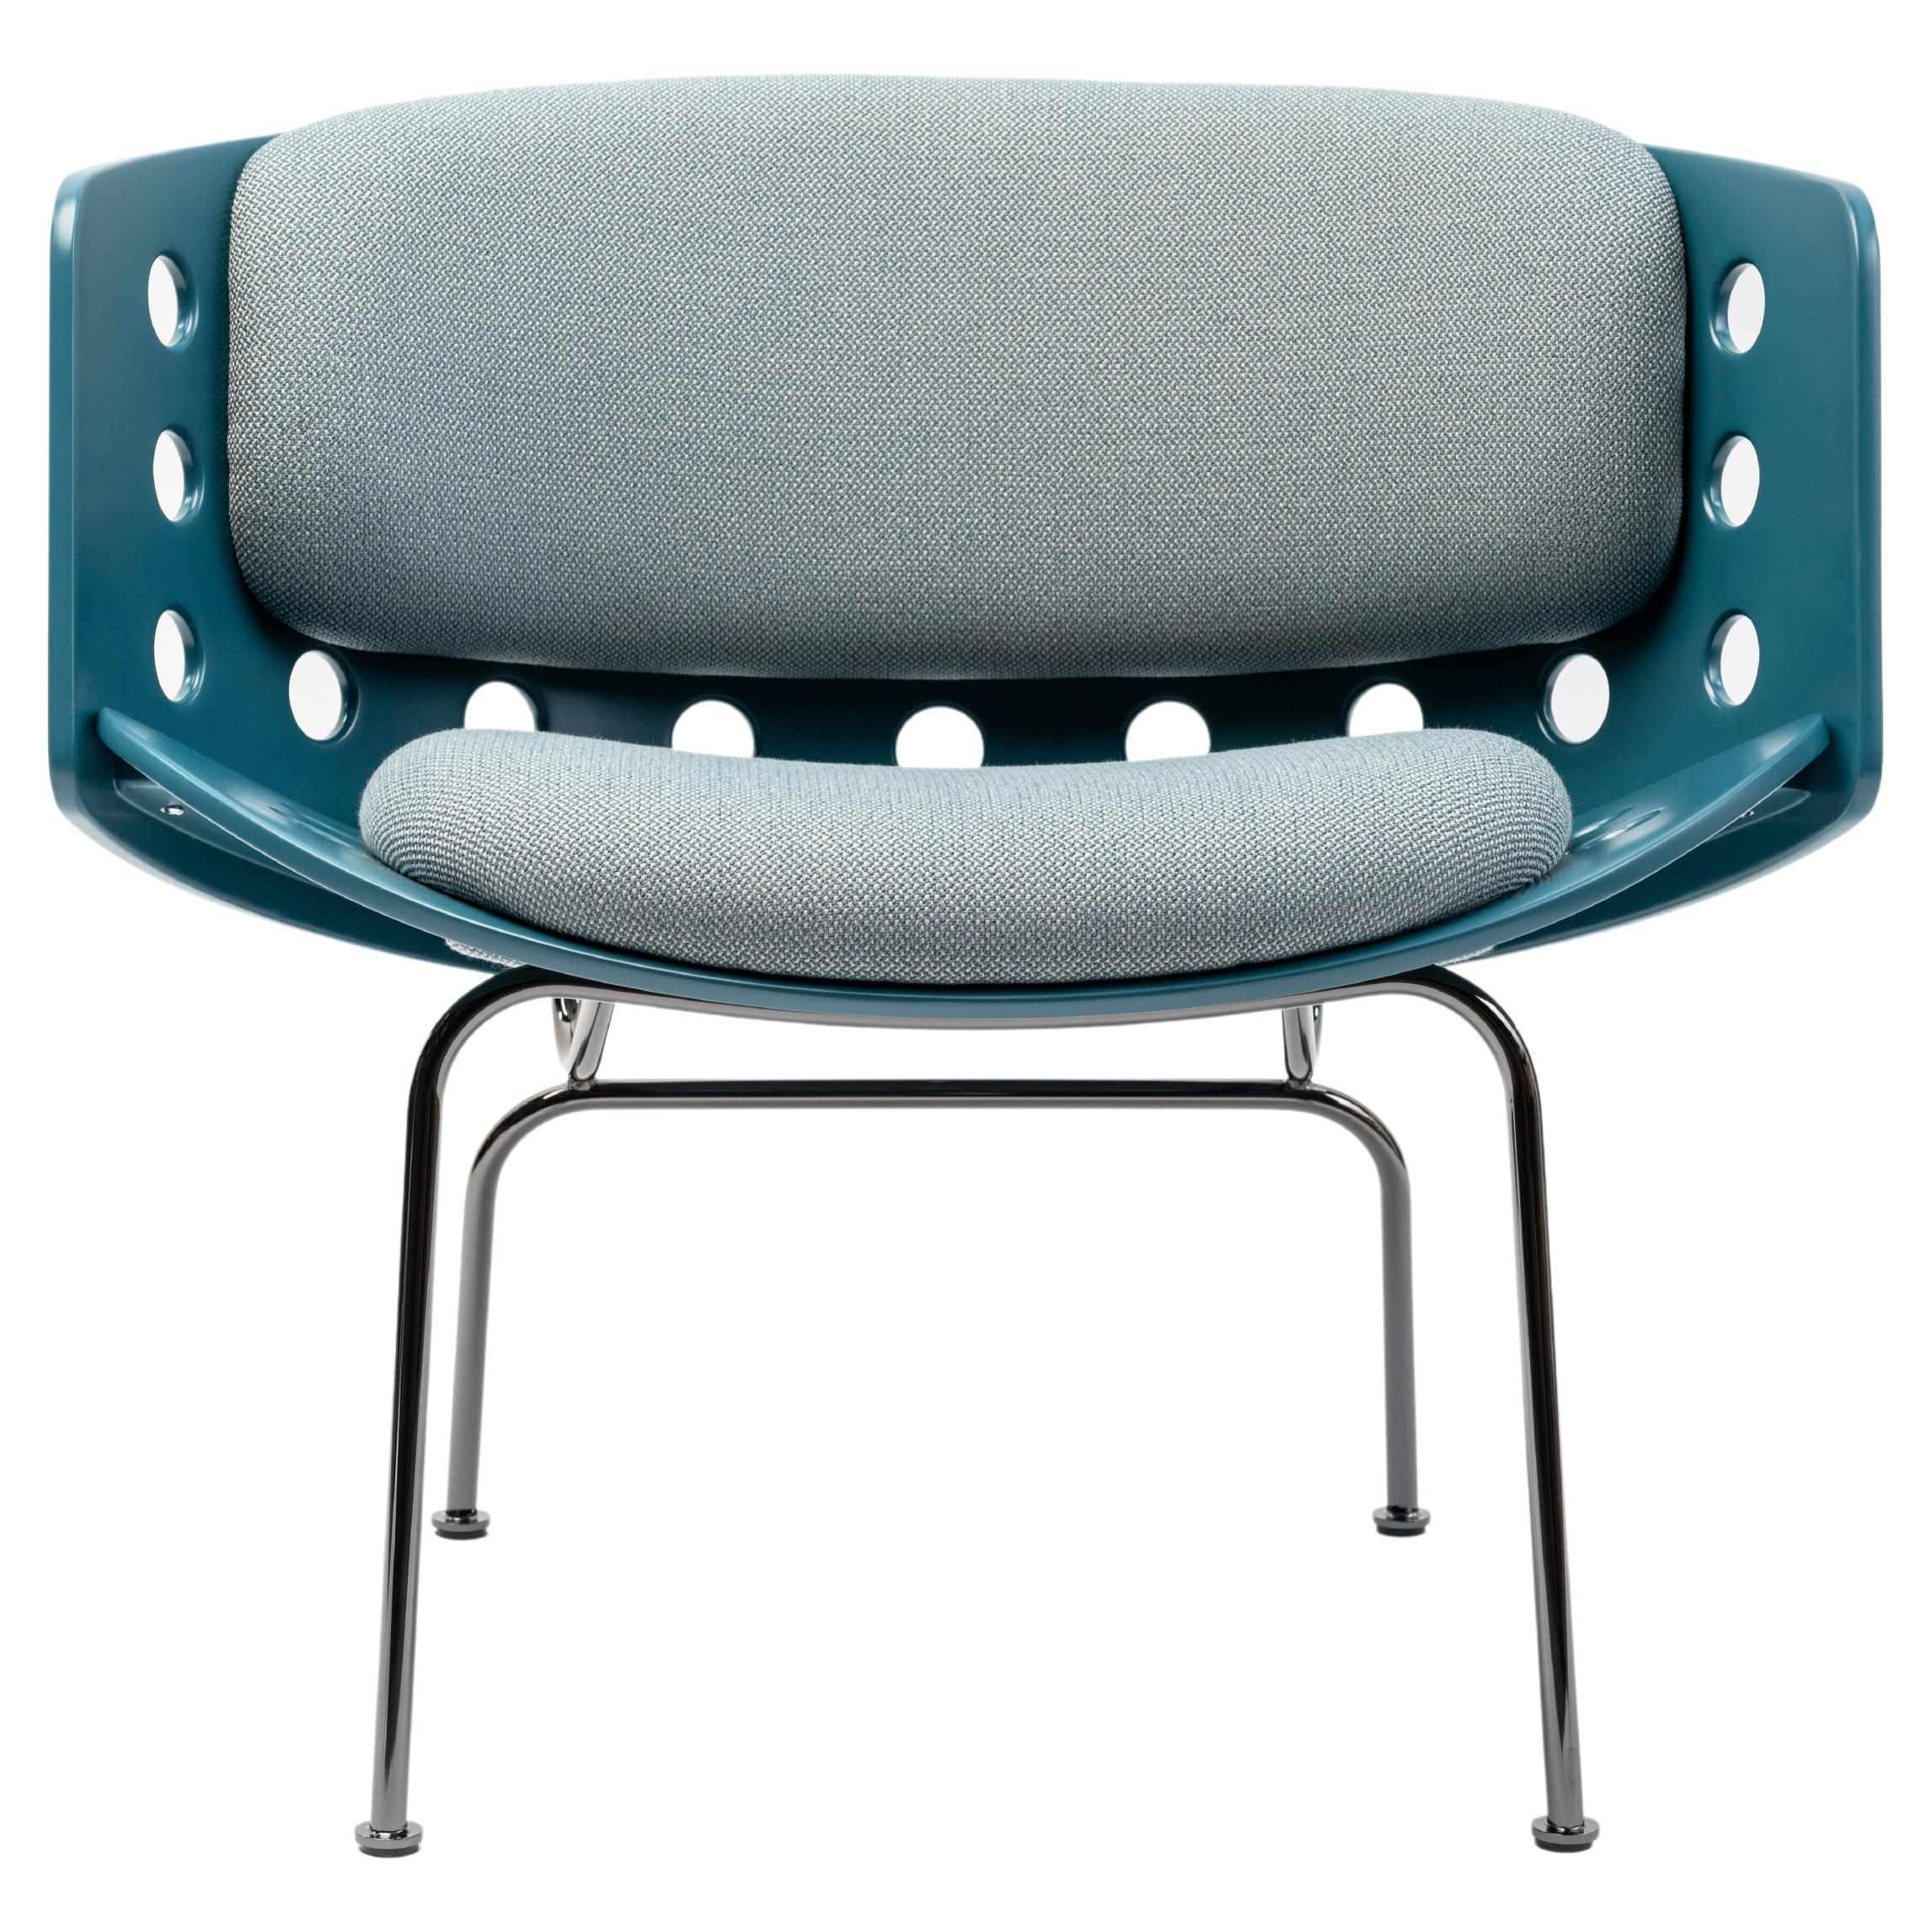 Durch die Gegenüberstellung von industriellen Materialien und einem besonderen Augenmerk auf den Komfort will sich der Melitea Lounge Chair als neuer Klassiker präsentieren.
Eine lineare Metallstruktur, die von den Beinen bis zur Rückenlehne